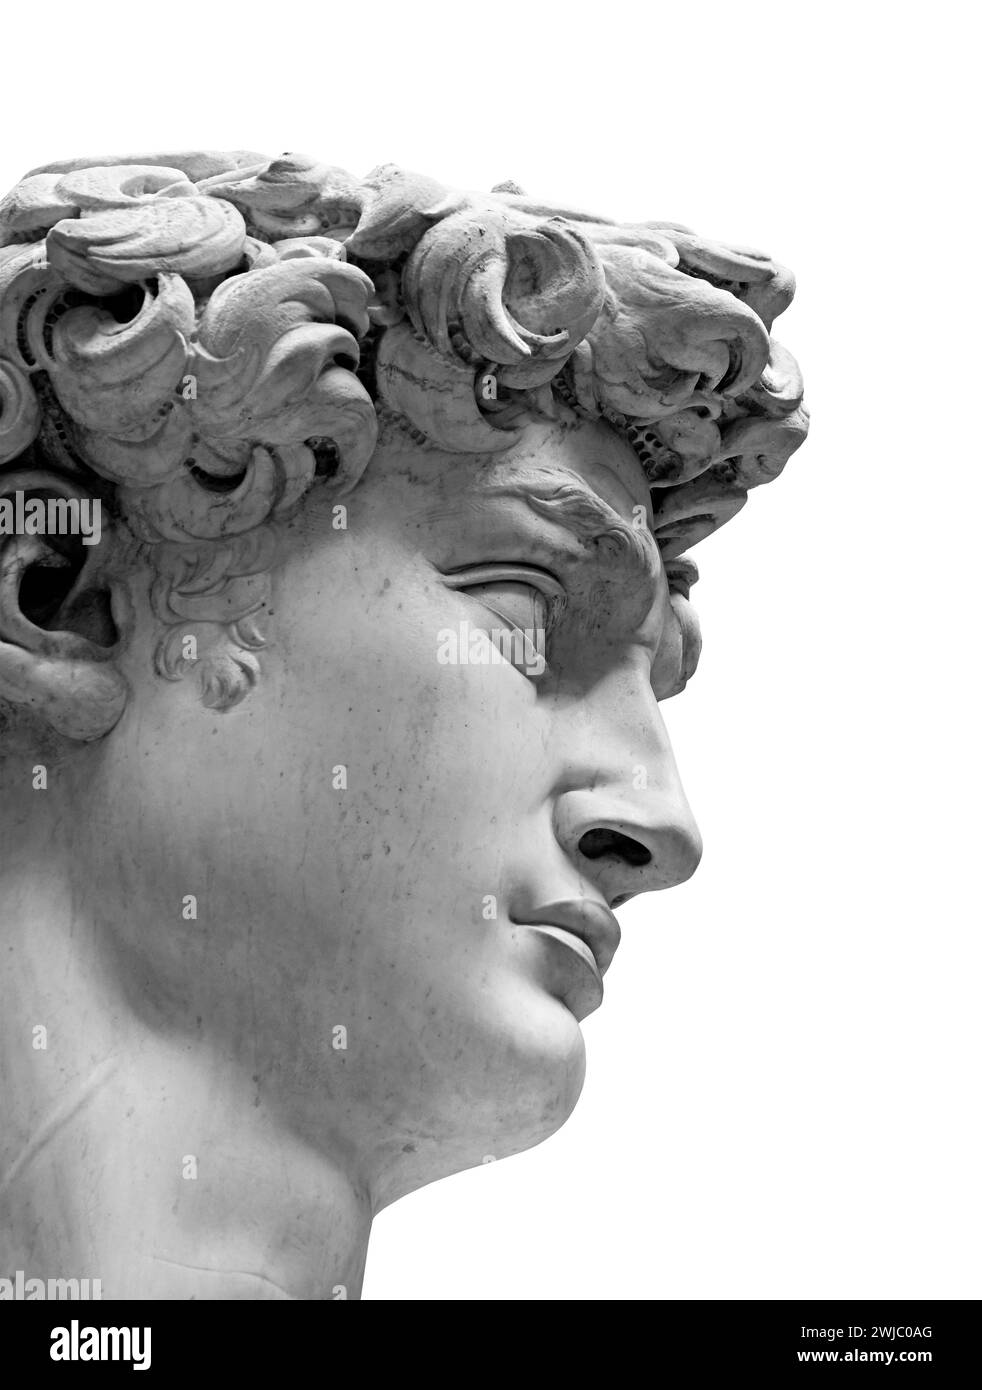 La replica del David, statua di Michelangelo isolata su sfondo bianco. Primo piano in testa la foto è scattata in Piazza della Signoria a Firenze, Foto Stock